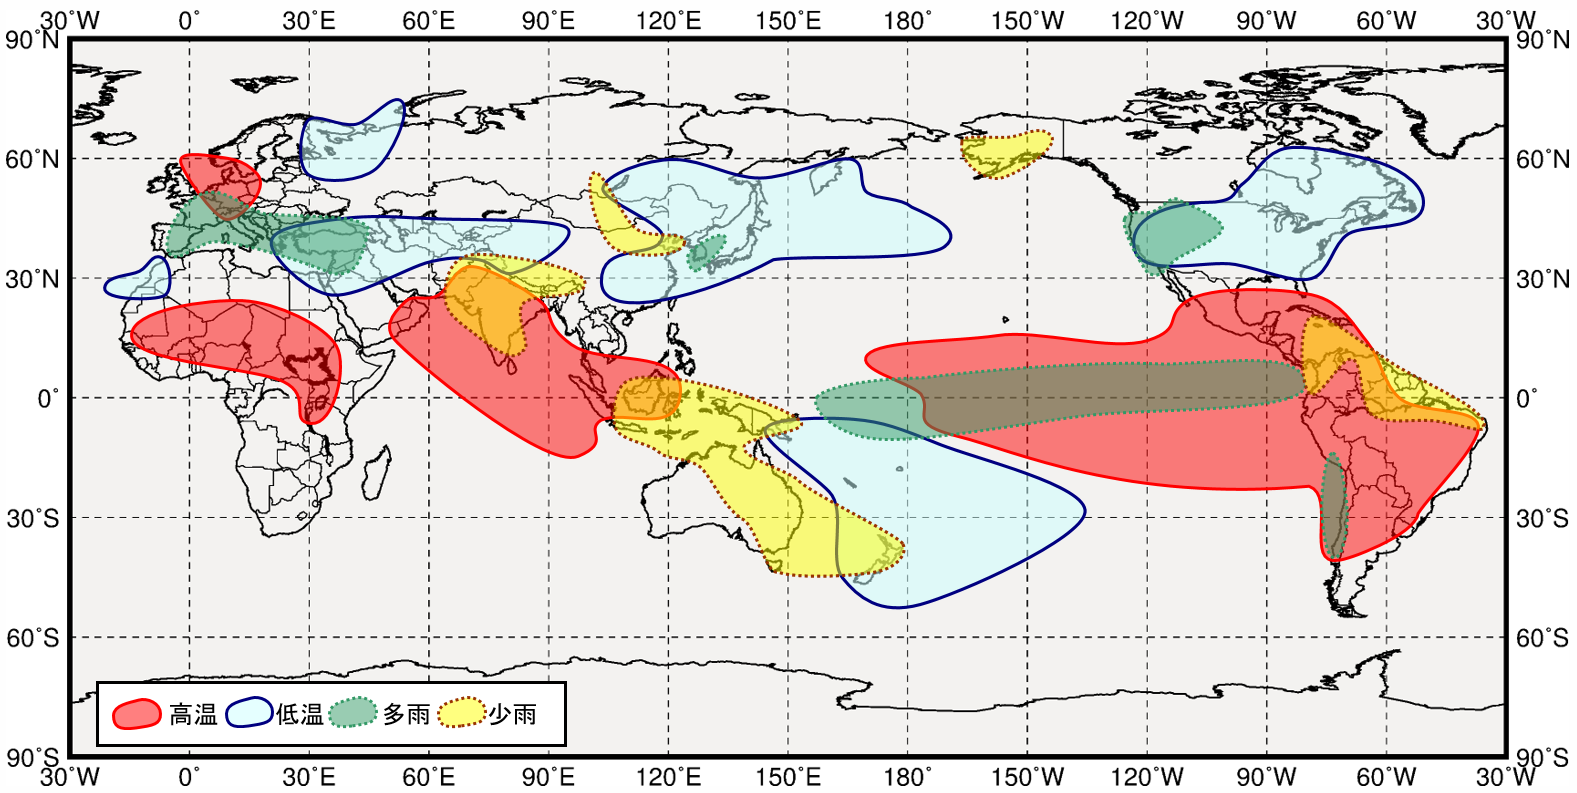 エルニーニョ現象発生時の世界の６月から８月にかけての気温と降水量の傾向の分布図